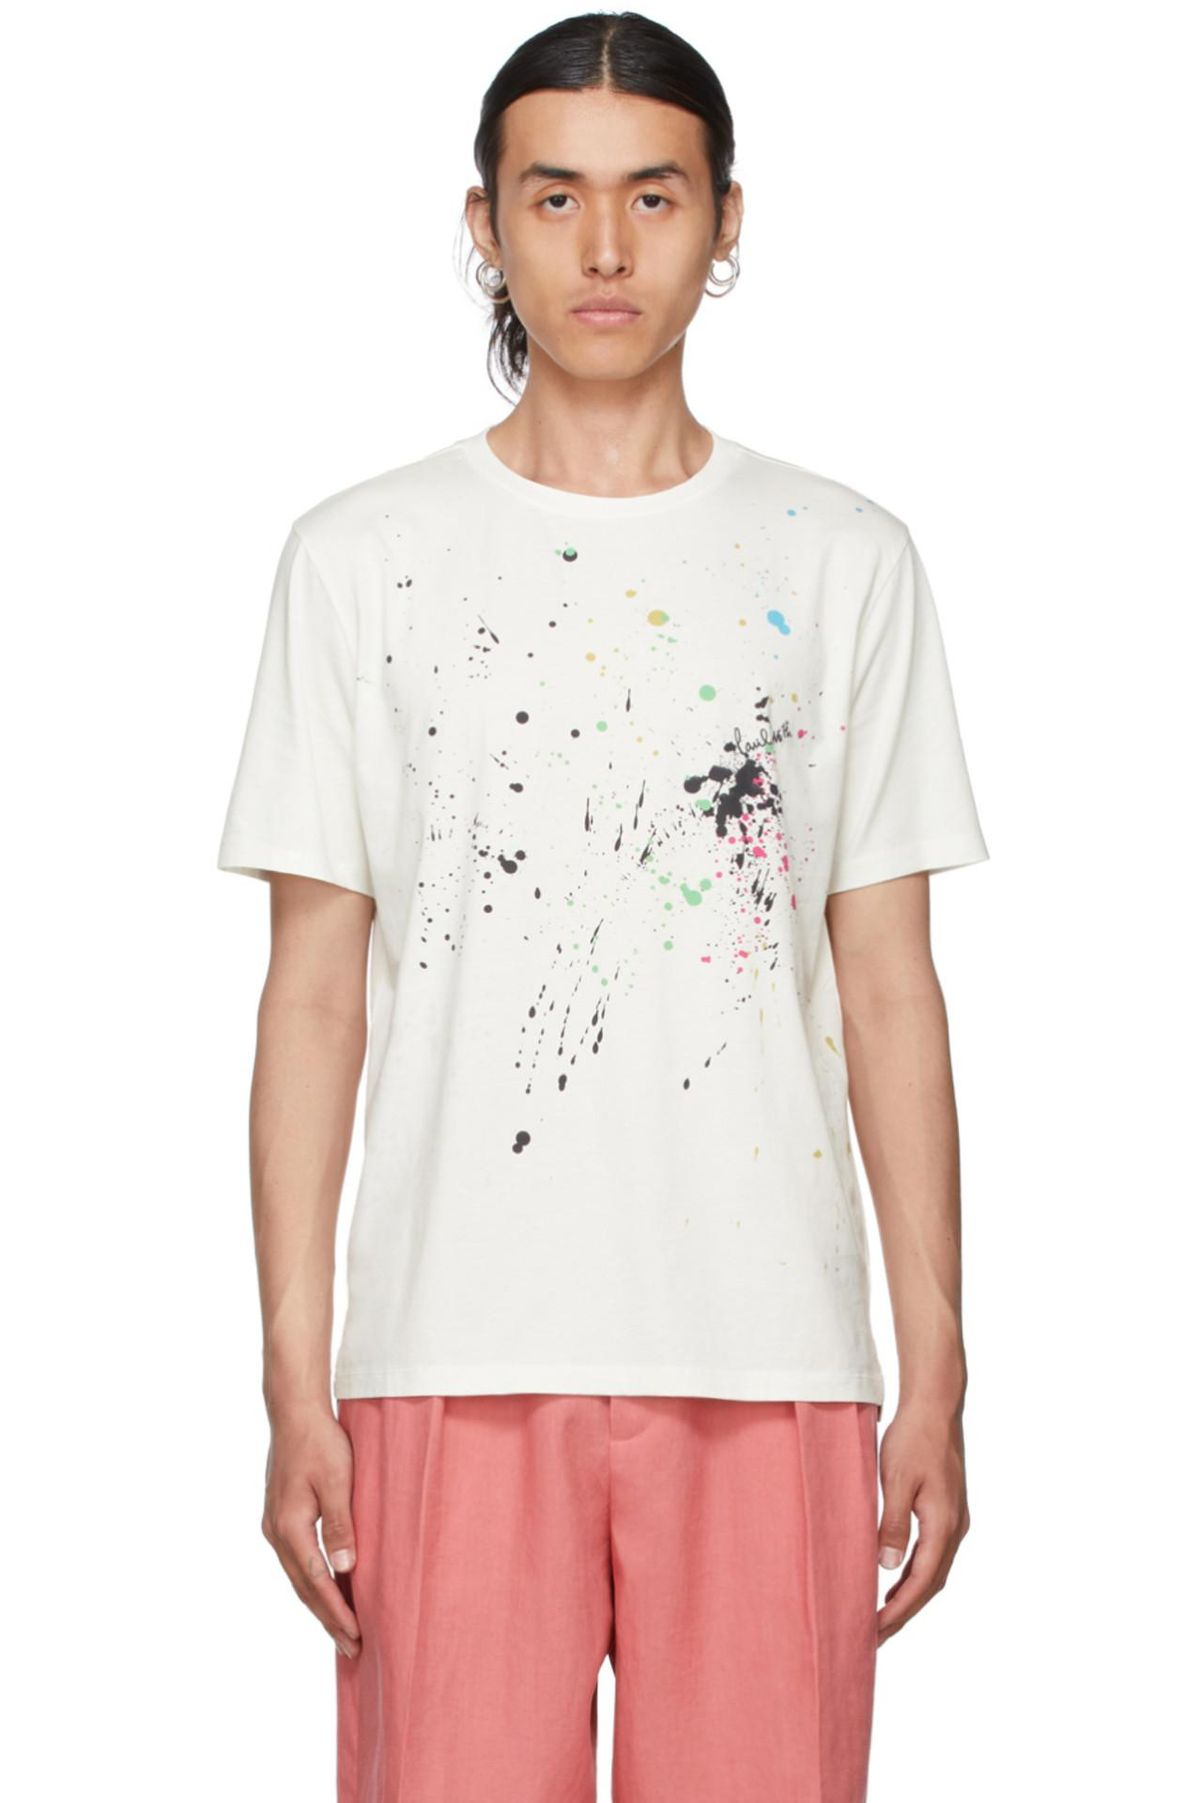 Paint Splatter T-shirt